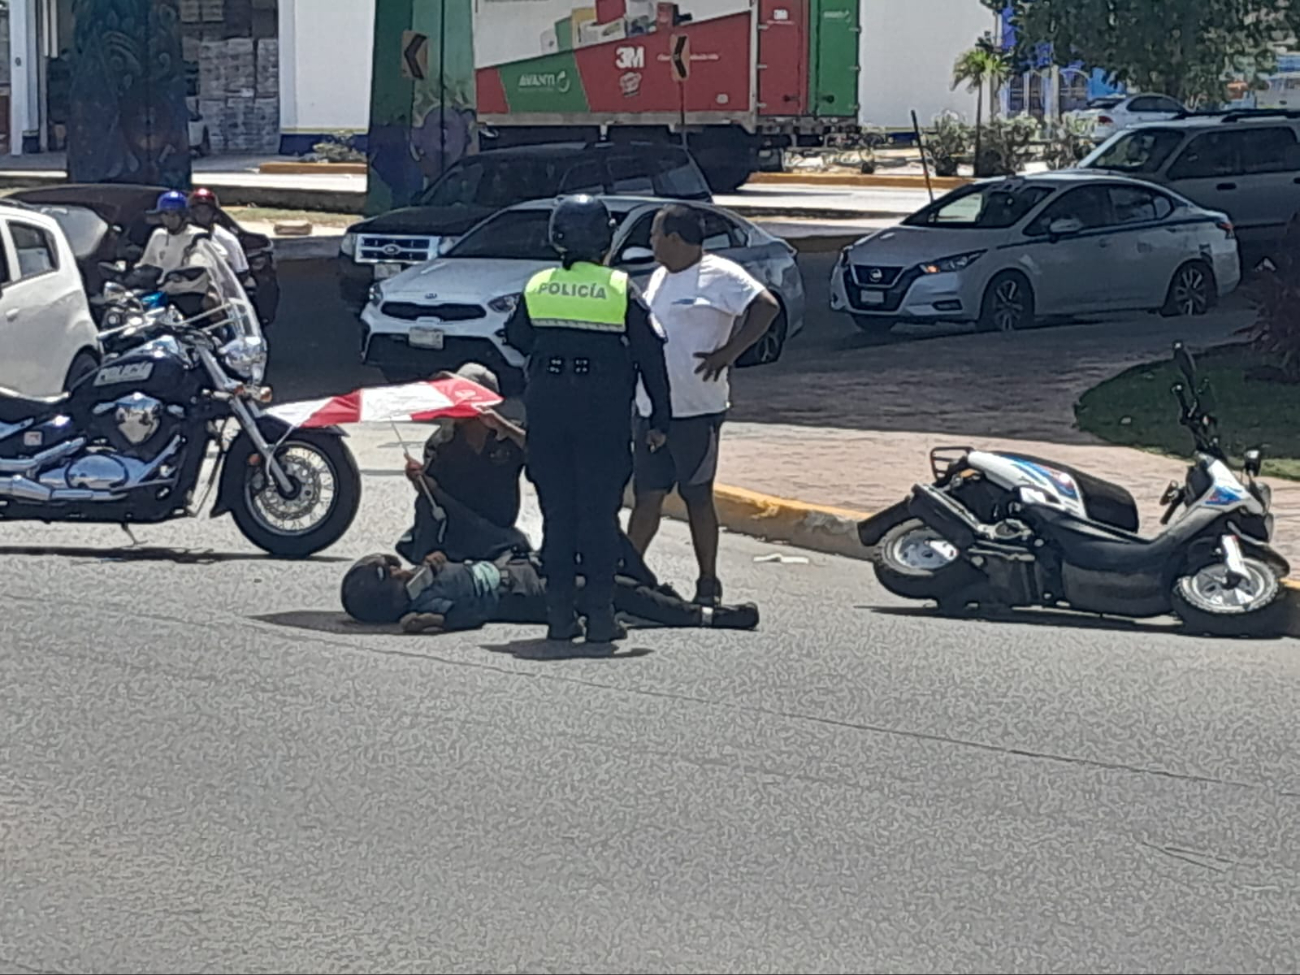 El conductor huyó con rumbo desconocido tras atropellar al motociclista